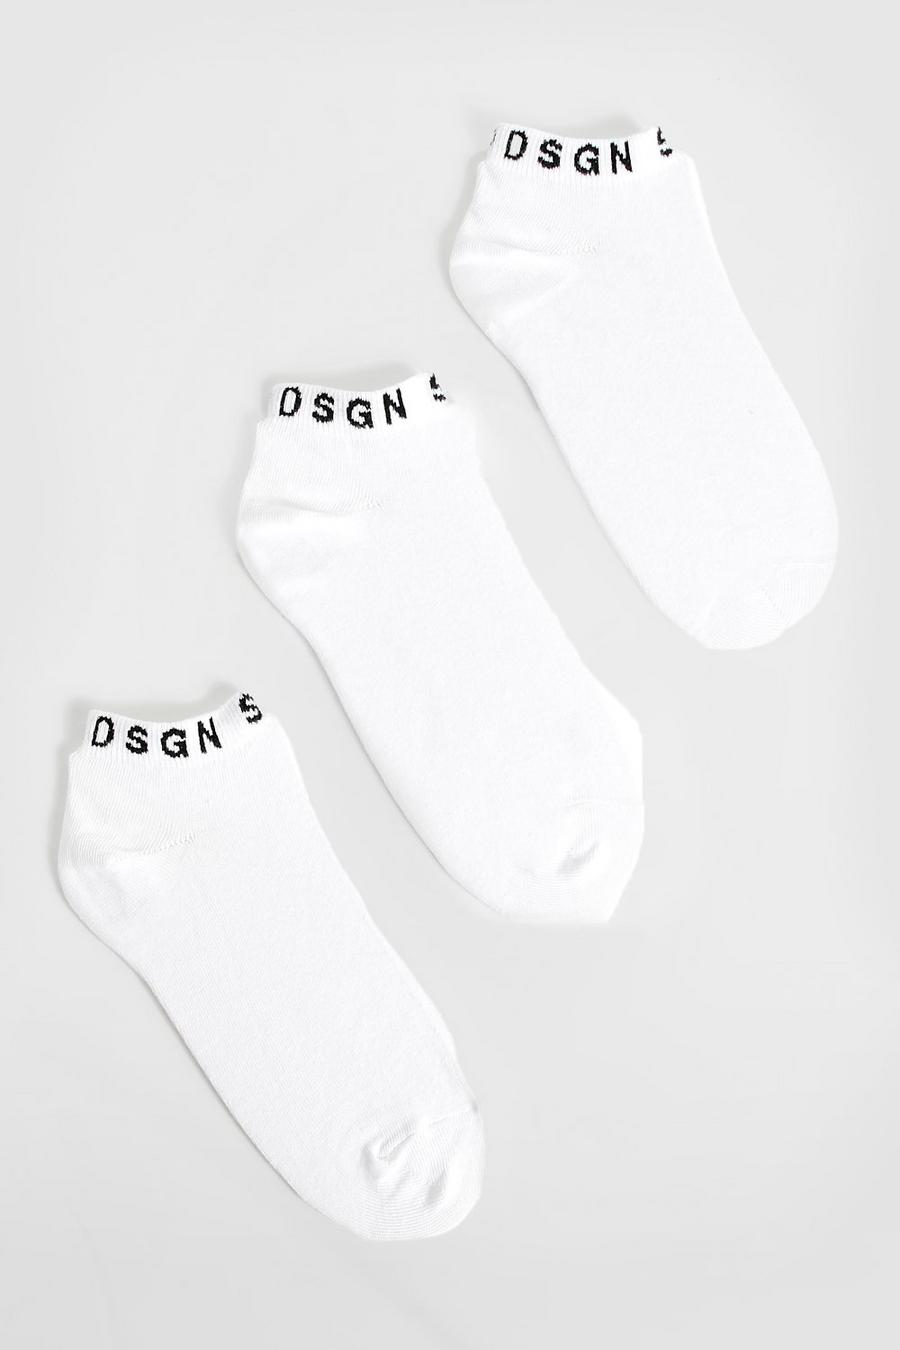 3er-Pack Dsgn Studio Sneaker-Socken, White